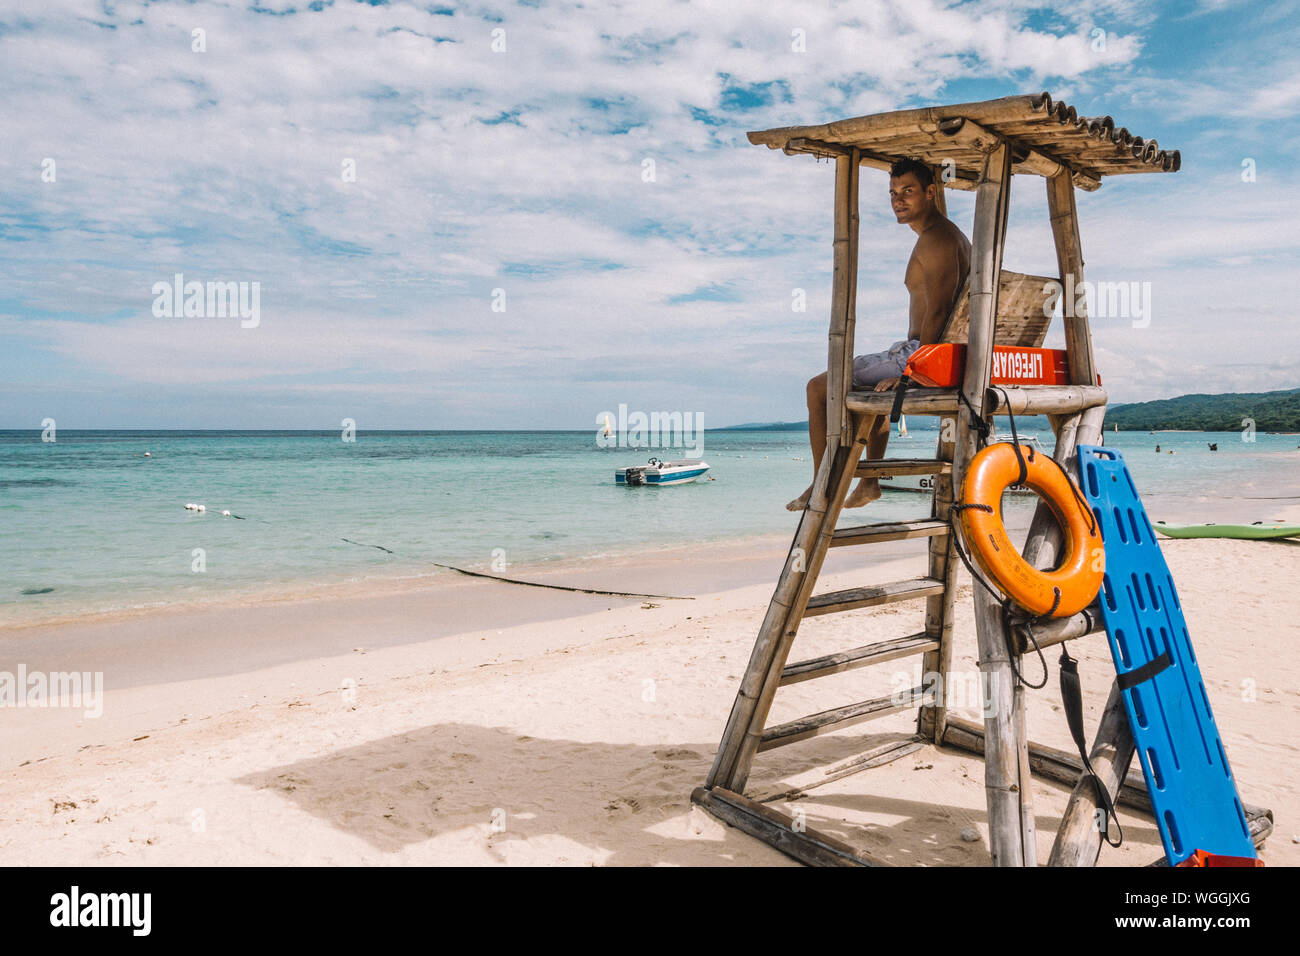 Mann sitzt auf Bademeister Stuhl am Strand gegen Sky Stockfotografie - Alamy